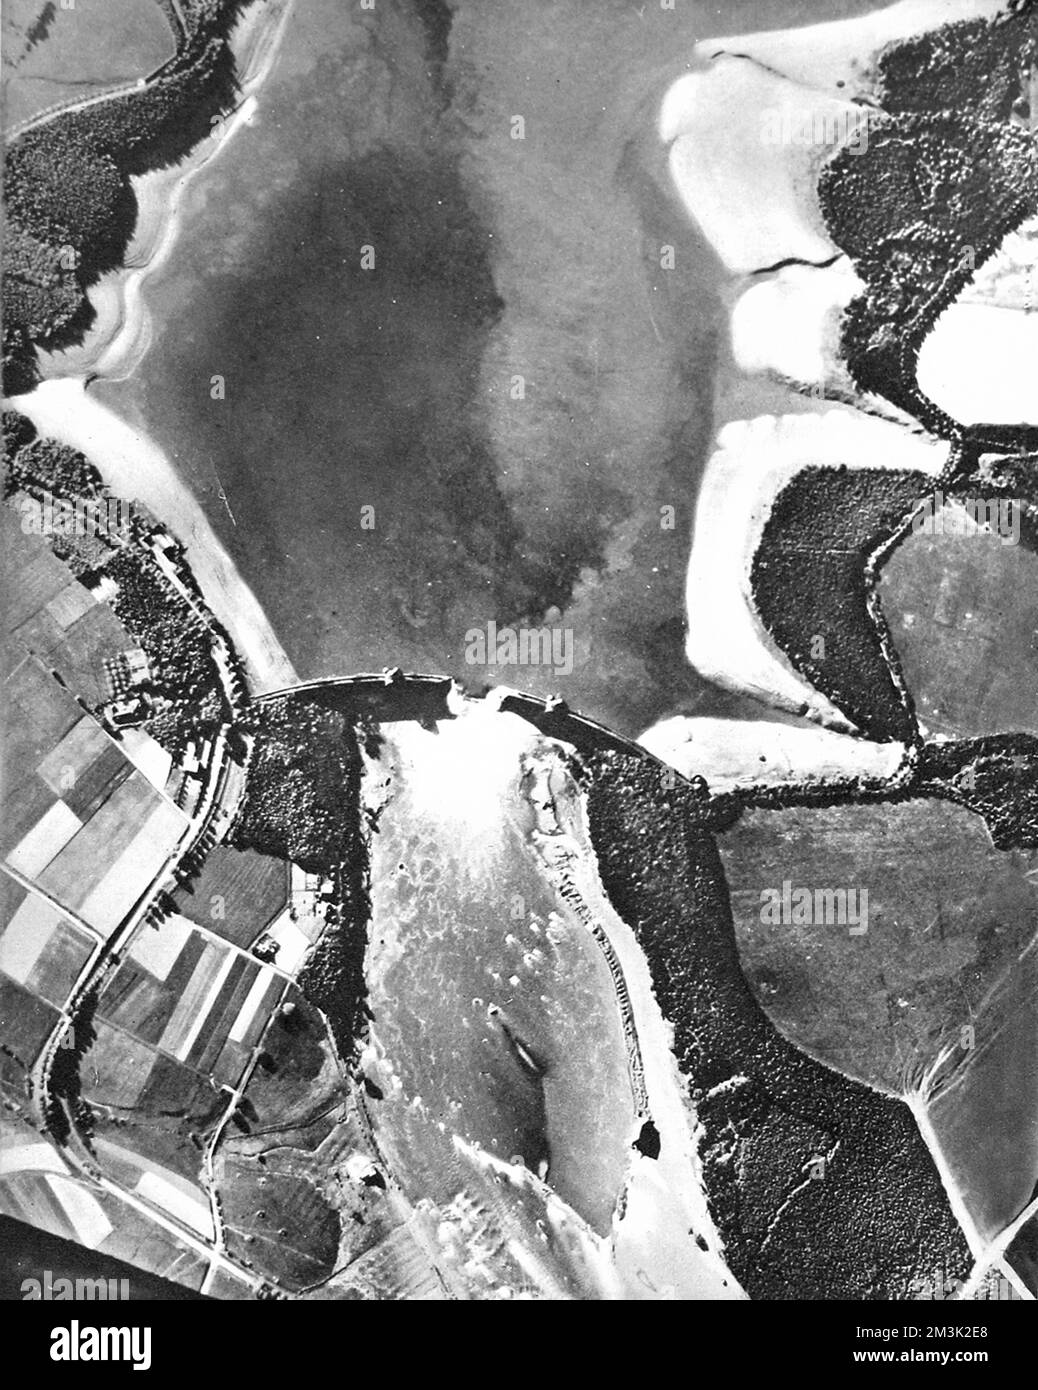 Photographie aérienne montrant le barrage et le réservoir de Mohne (en haut) après le raid de 'Dambusters' de 1943. Le 16th mai, des bombardiers 'Lancaster' du 617 Squadron, dirigés par Guy Gibson, ont attaqué quatre barrages dans la région de Westphalie en Allemagne. Ils ont violé deux barrages, le barrage de Mohne et le barrage d'Eder, ce qui a conduit à des inondations généralisées. Date: 1943 Banque D'Images